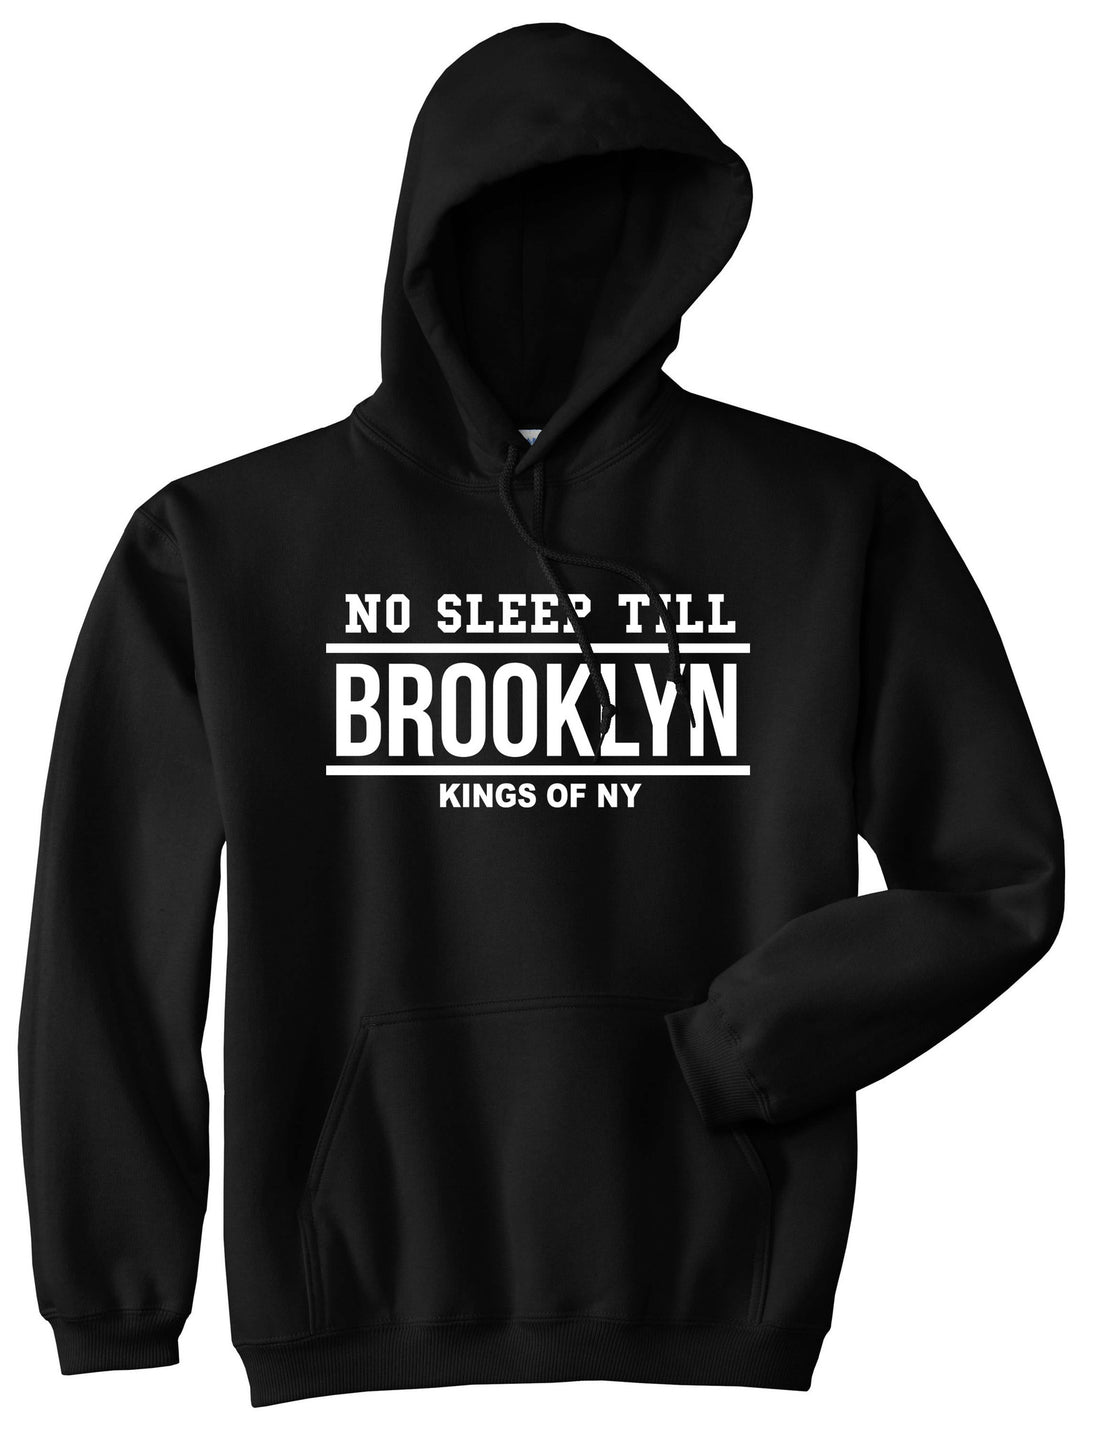 No Sleep Till Brooklyn Pullover Hoodie Hoody in Black by Kings Of NY